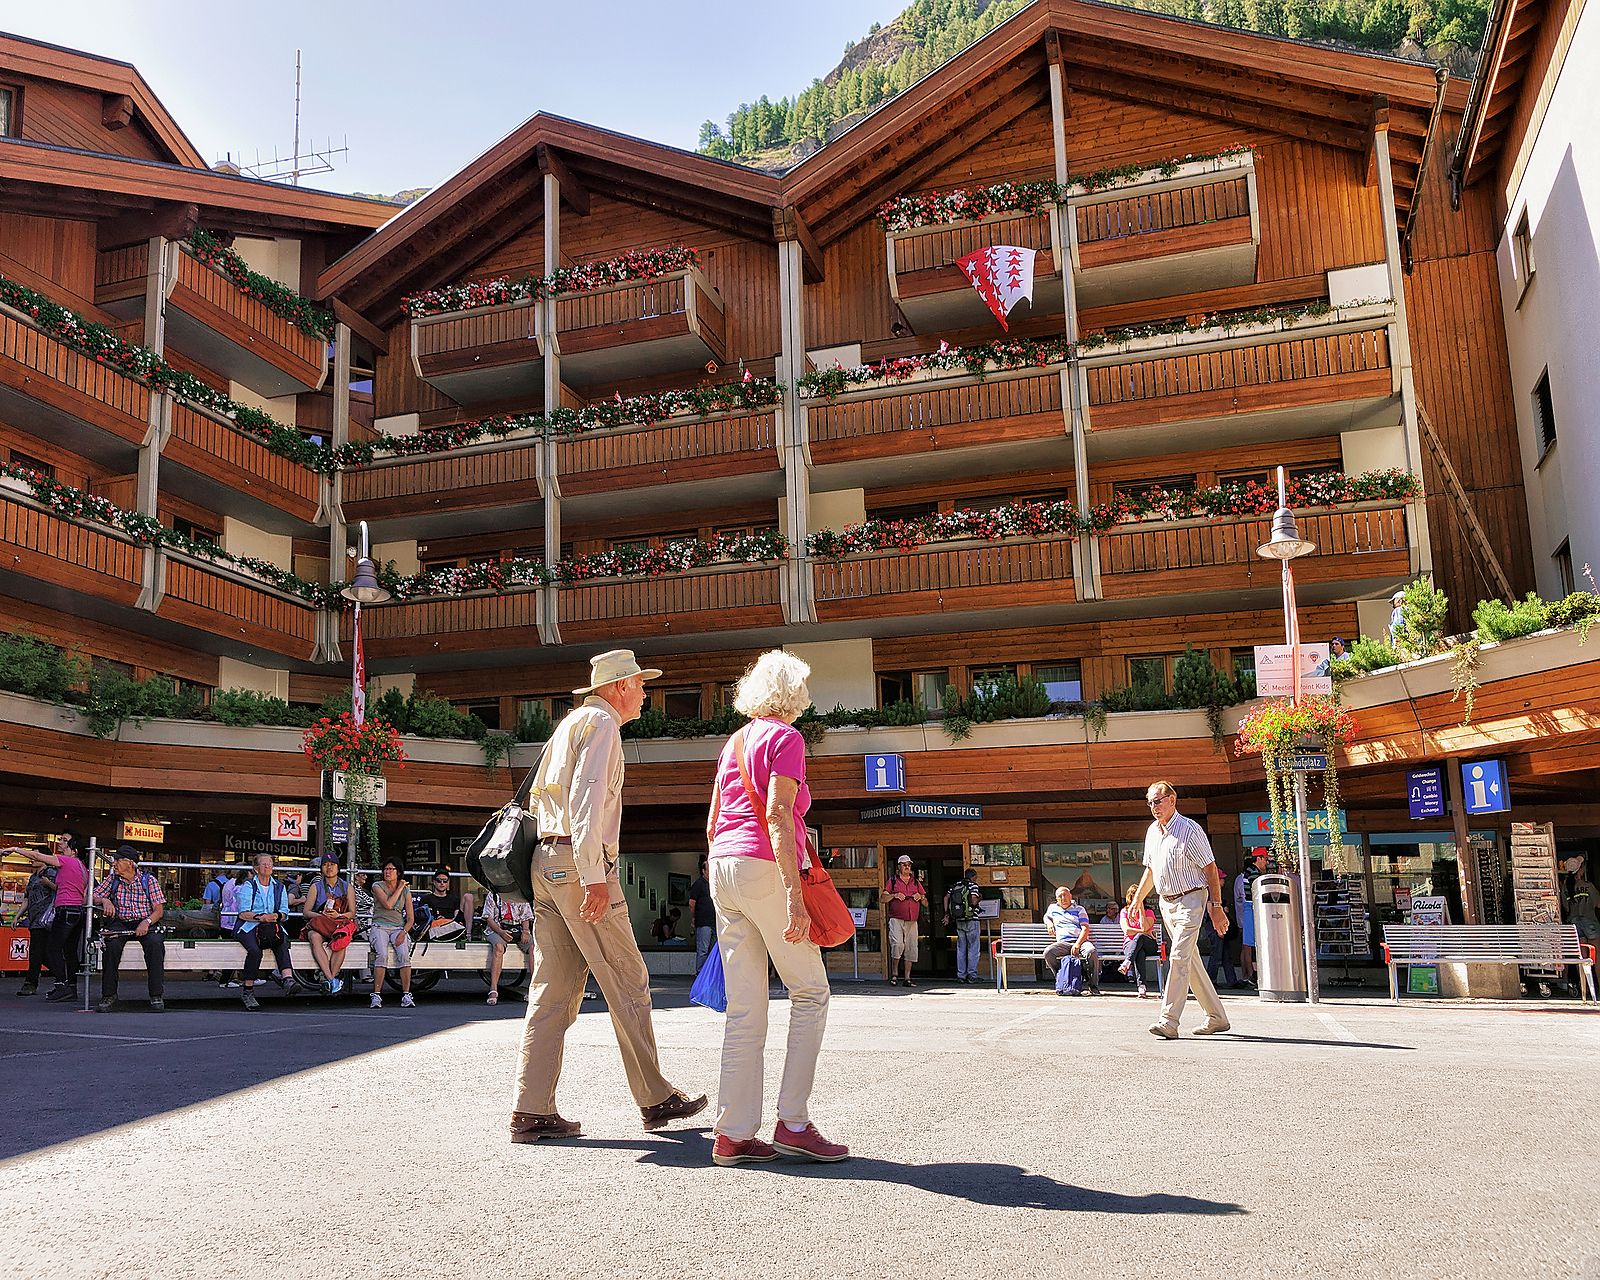 Suiza aprueba por referéndum igualar la edad de jubilación de hombres y mujeres